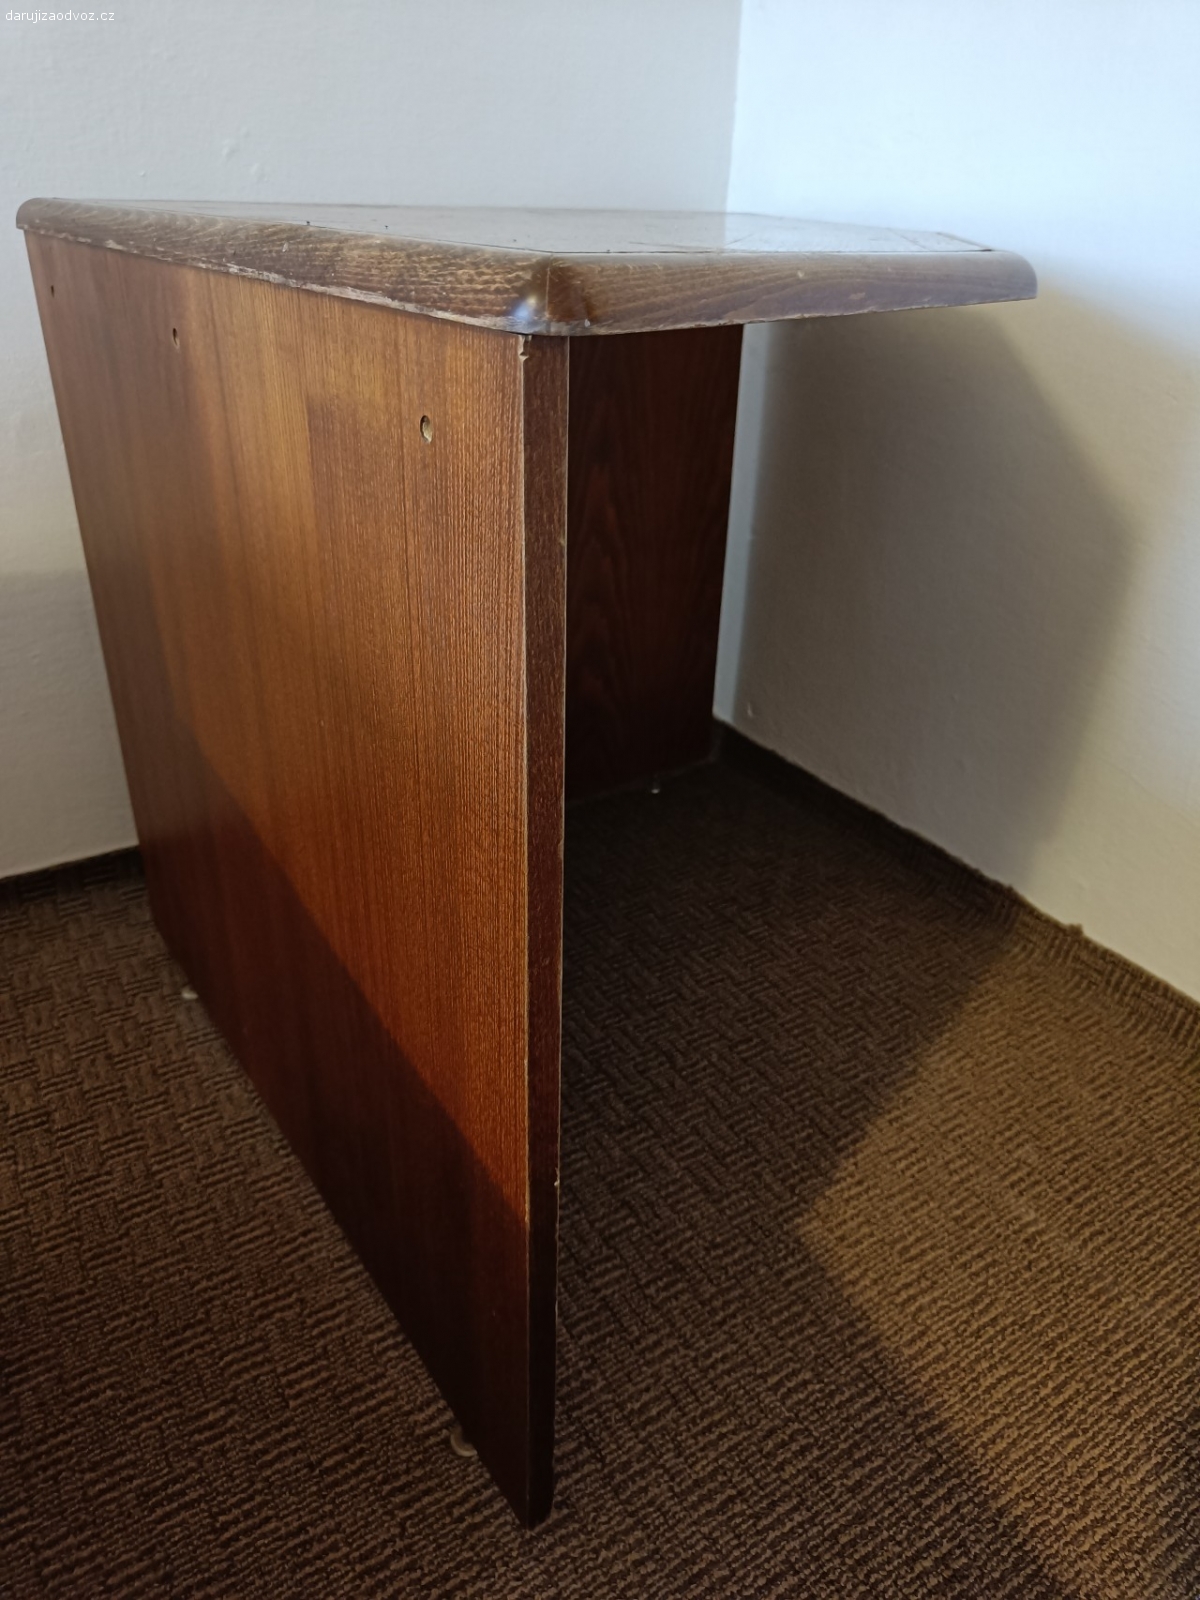 Rohový stůl. Starší dřevěný rohový stůl. Dýha.

rozměry: 80x80cm, výška 73cm